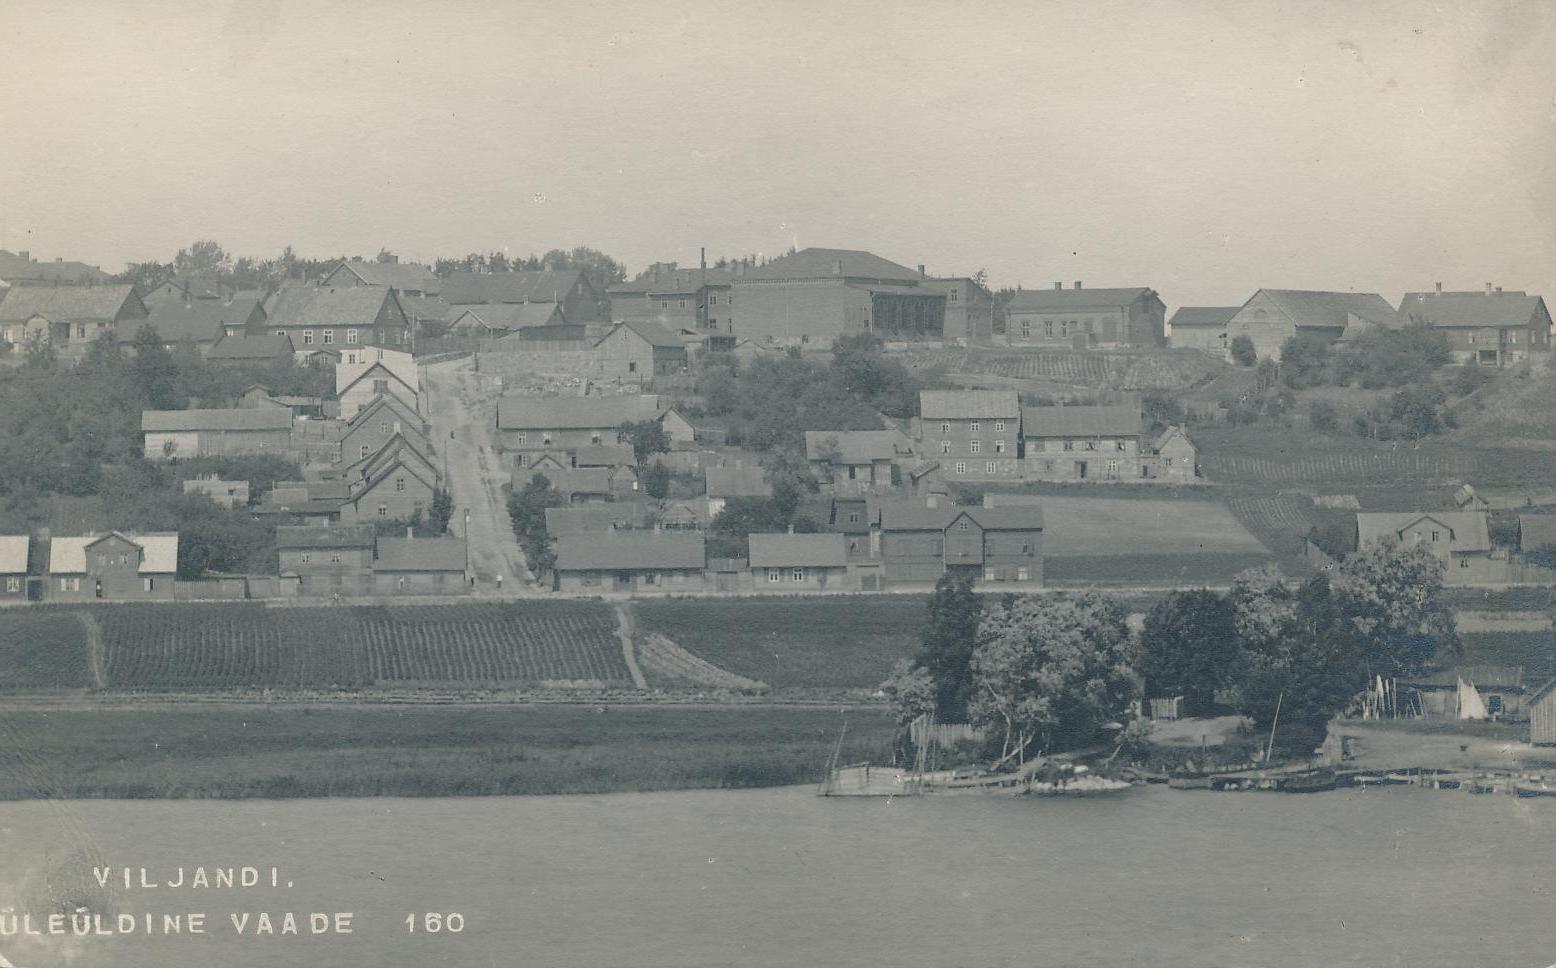 foto, Viljandi, Kõrgemäe t ümbrusega (järve poolt), u 1915, foto J. Riet